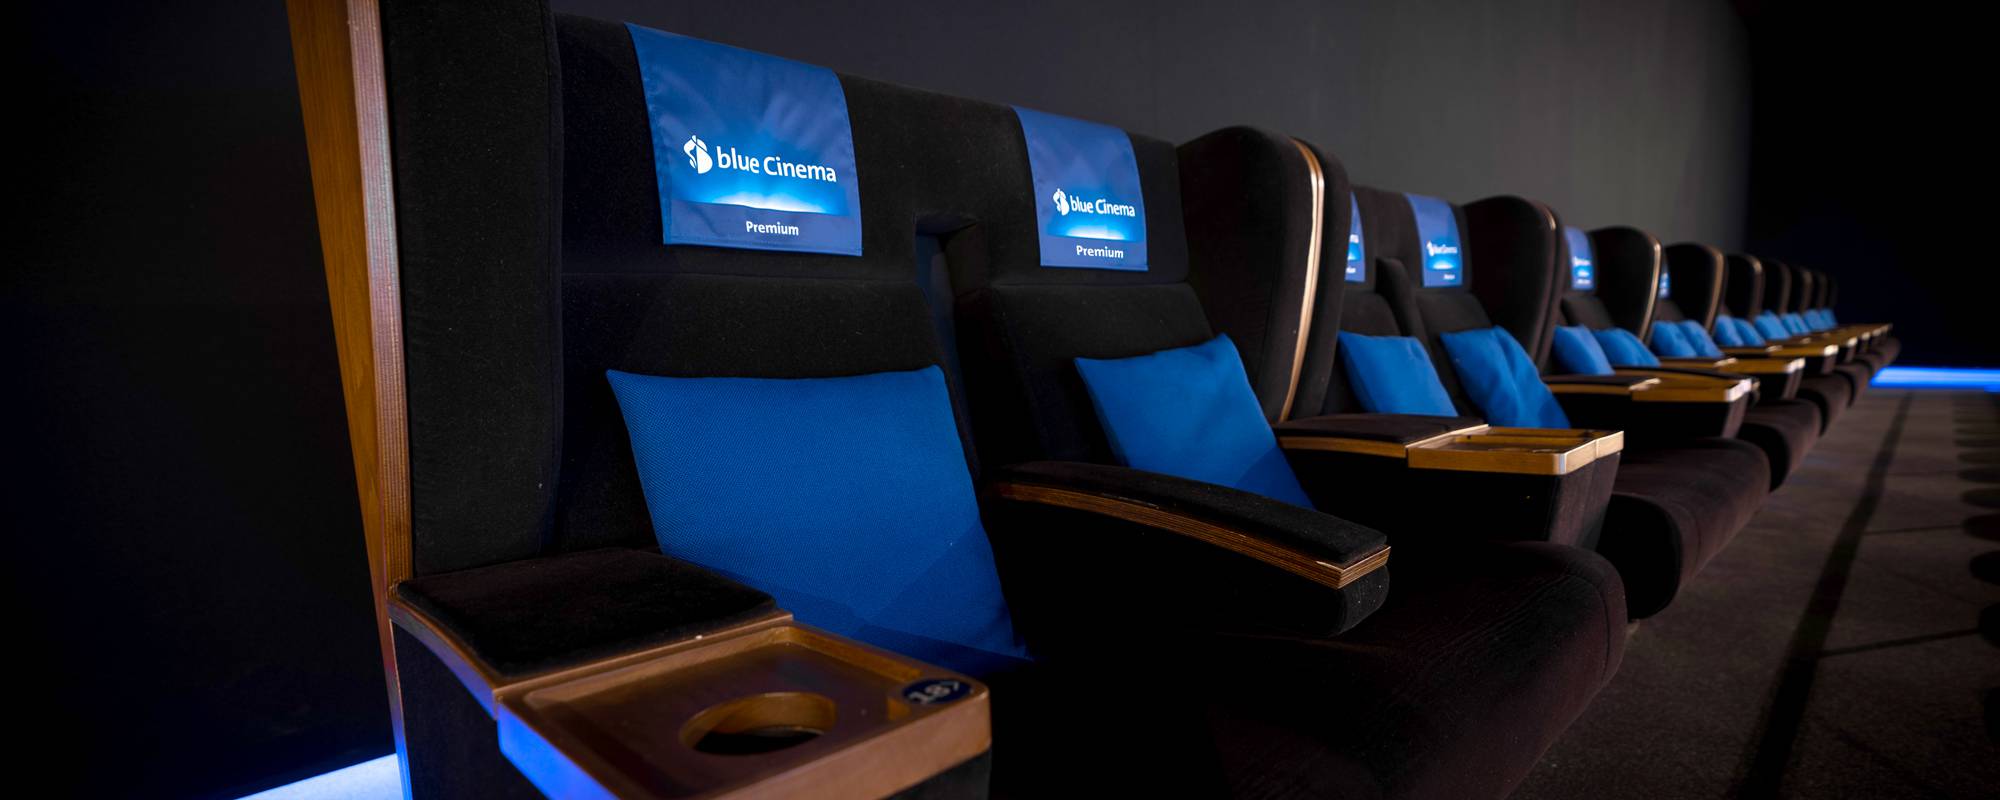 Sièges de cinéma premium de blue Cinema avec des accents bleus pour une expérience de visionnage exclusive.